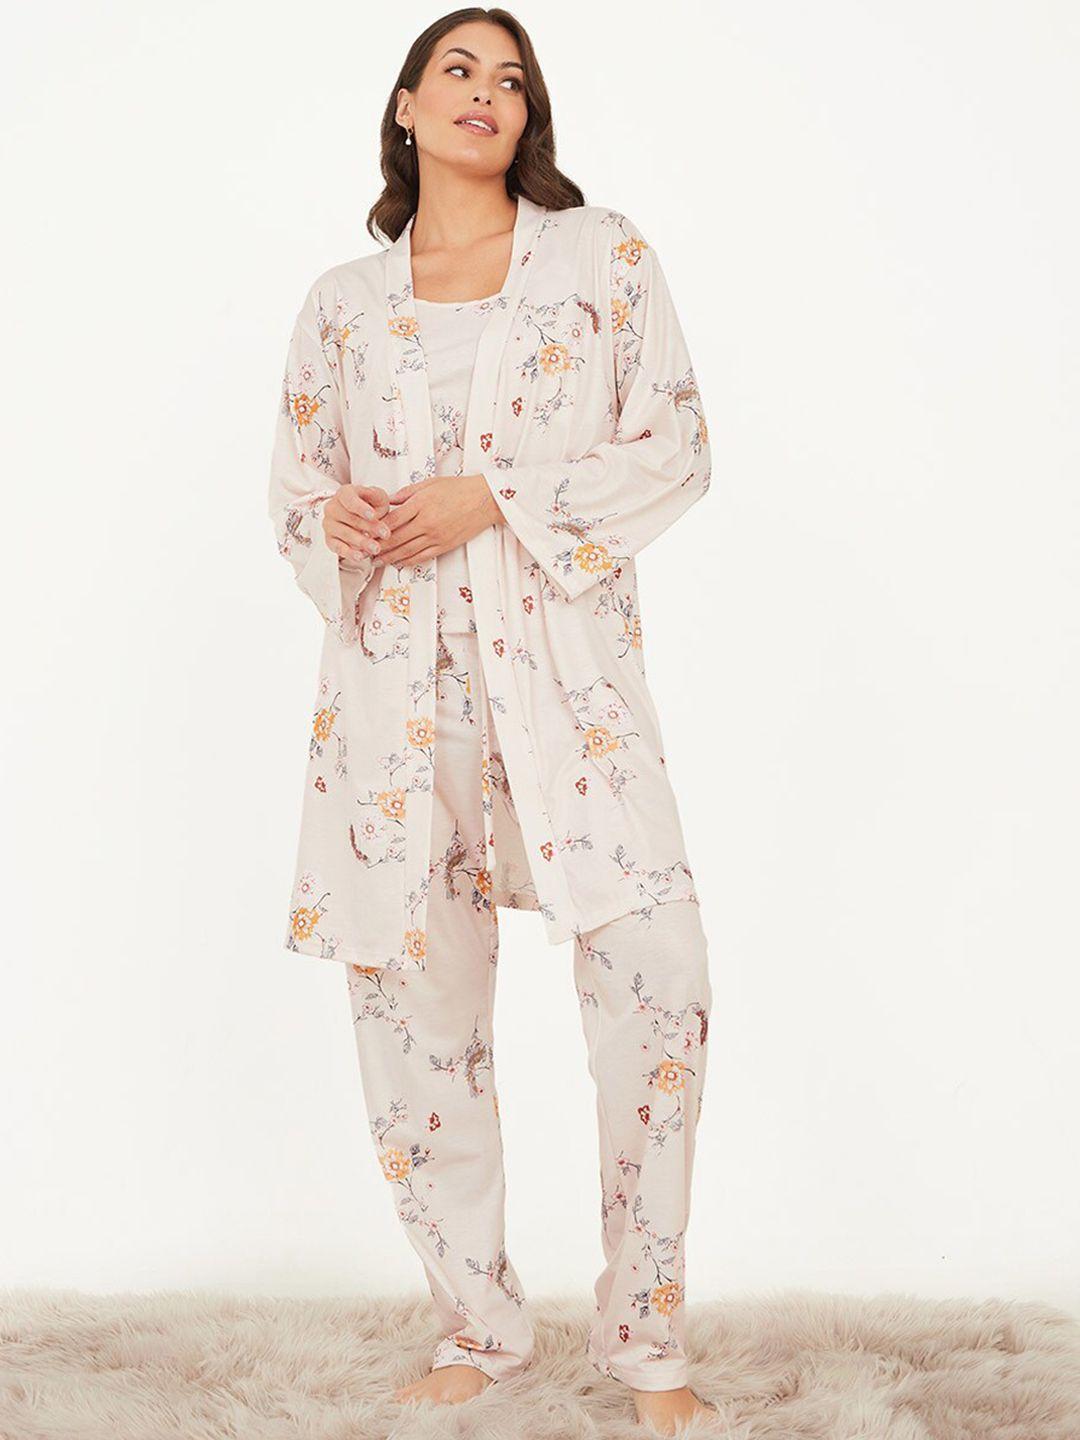 styli floral printed cami & pyjamas with rabe night suit